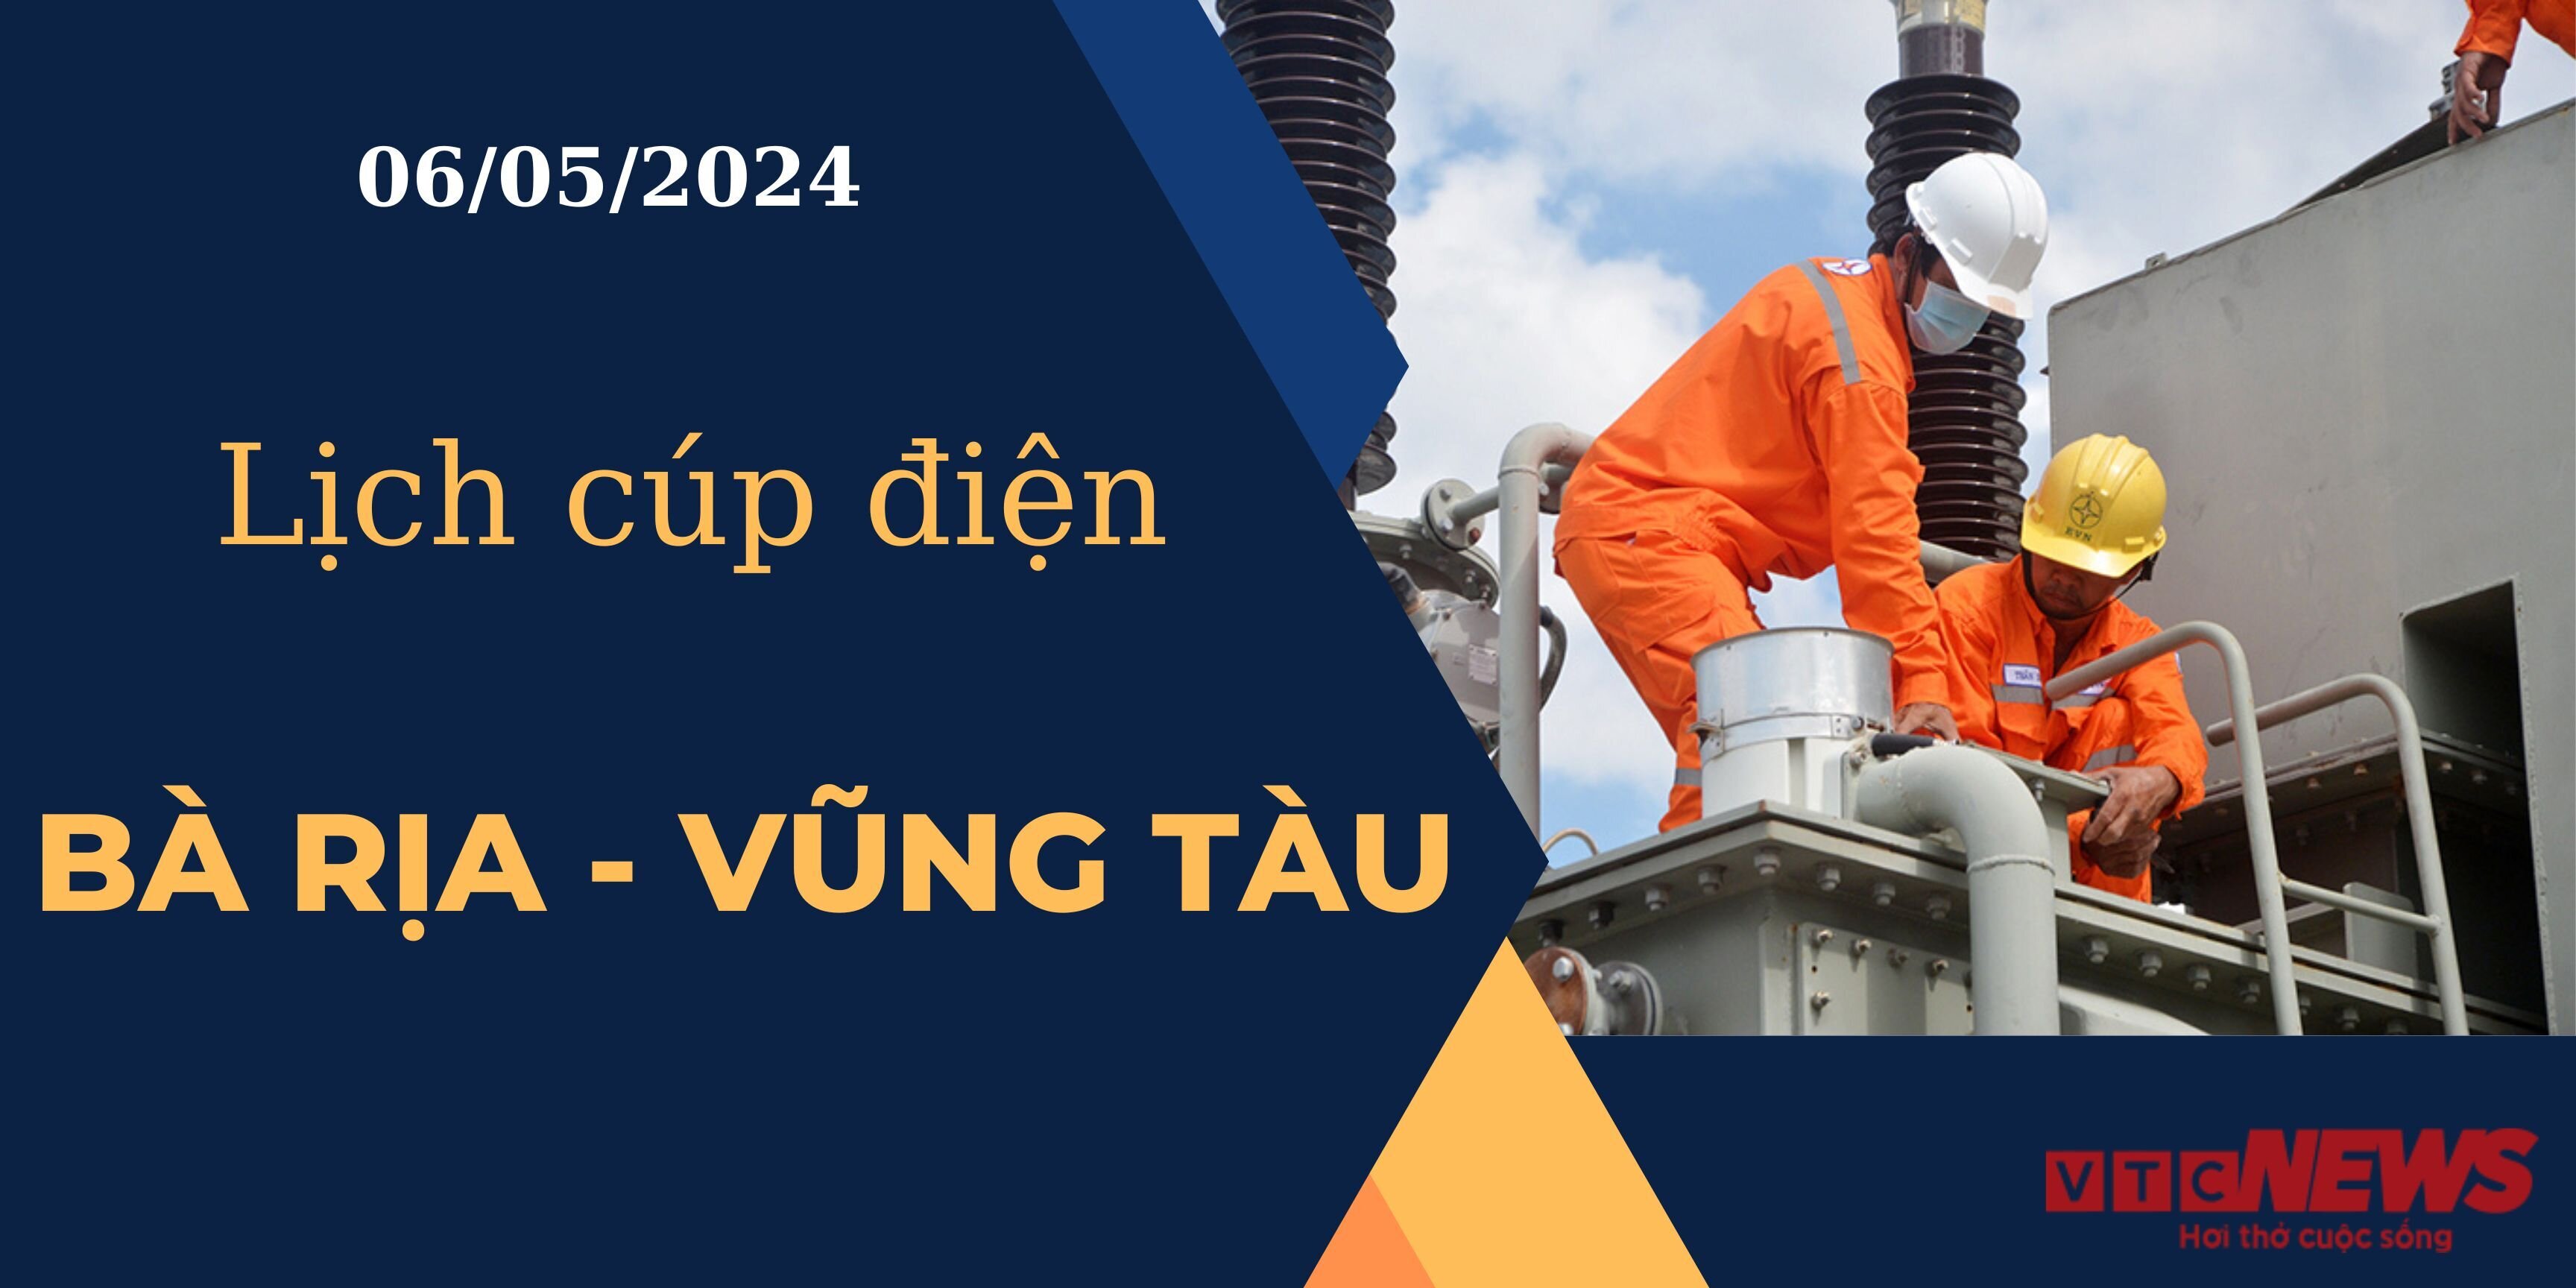 Lịch cúp điện hôm nay ngày 06/05/2024 tại Bà Rịa - Vũng Tàu